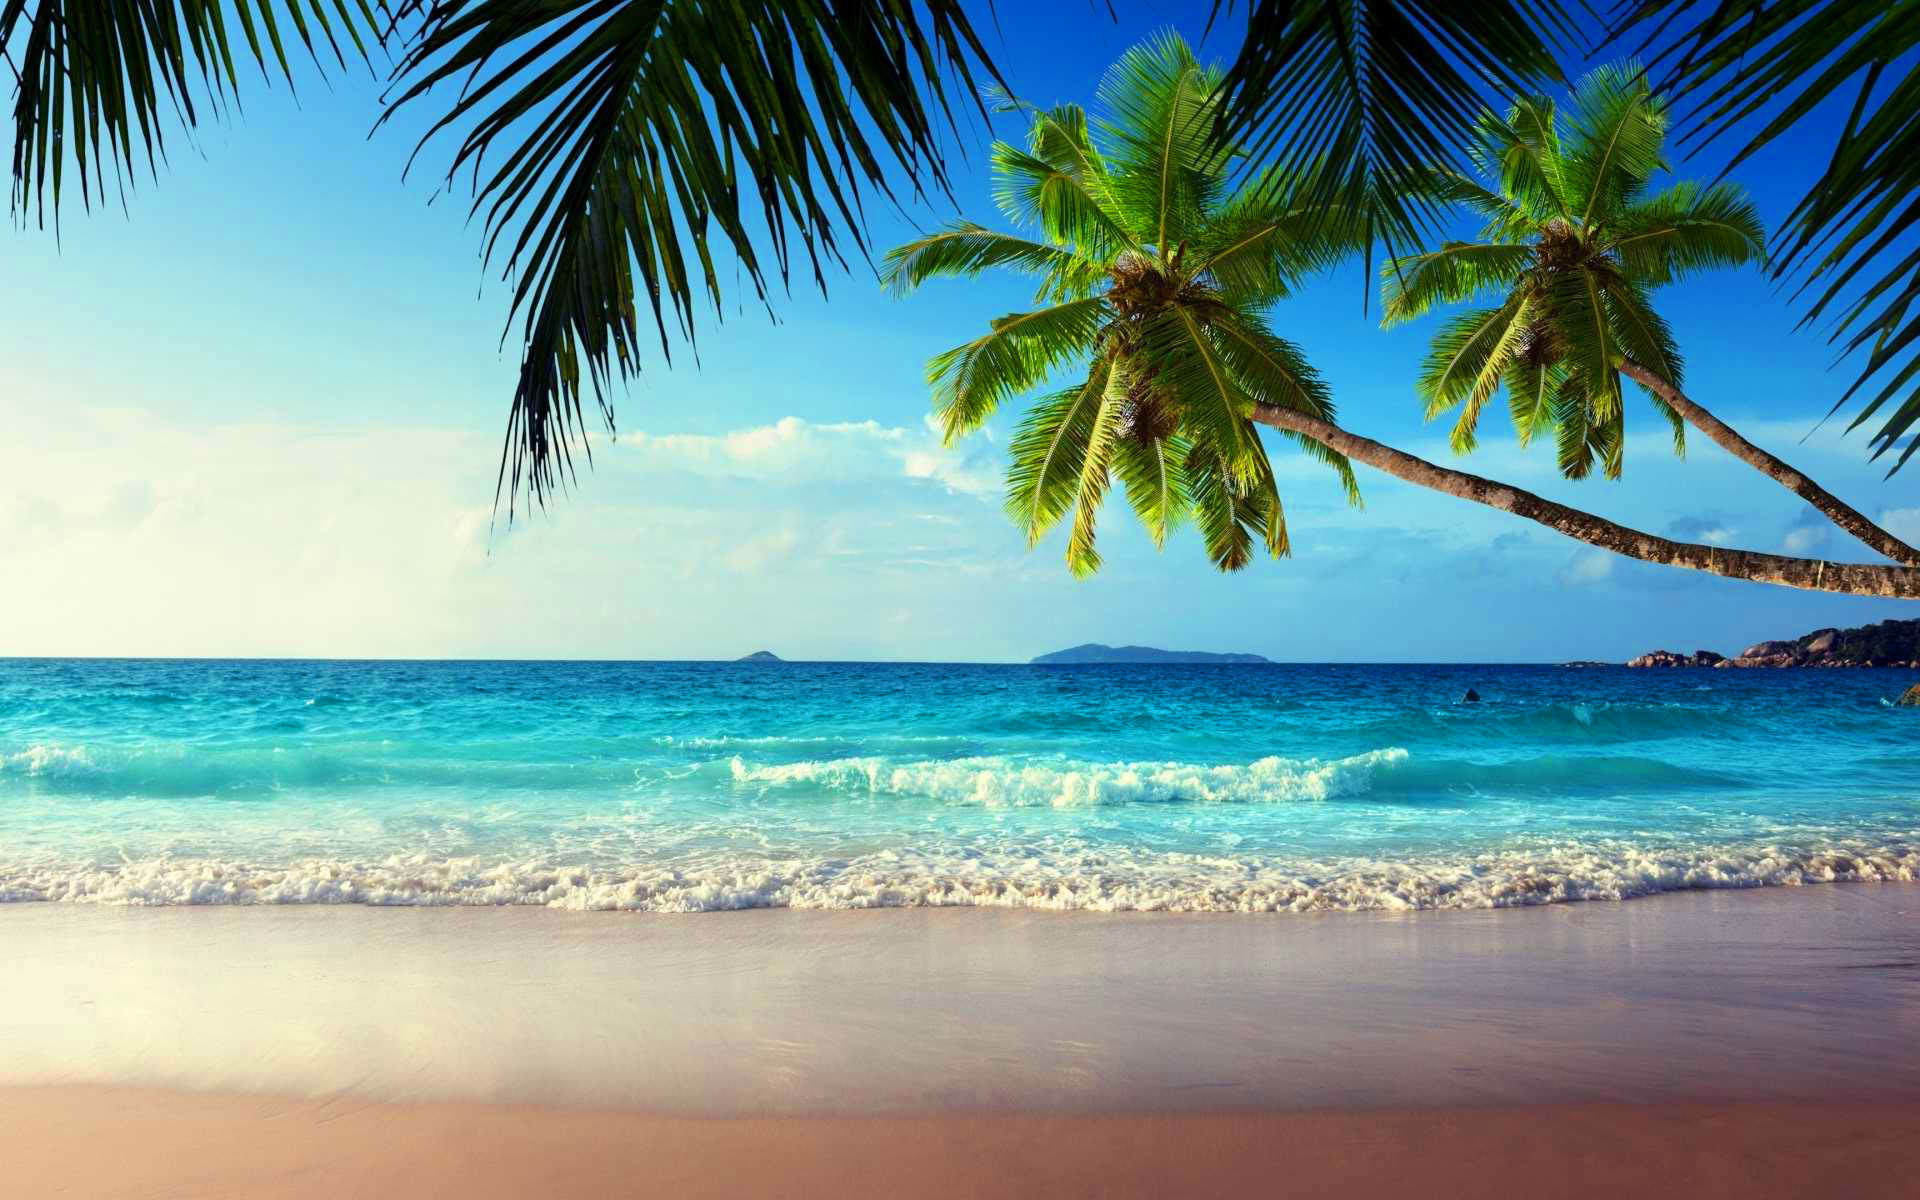 Bãi biển nhiệt đới với cây cọ và đại dương: Hòa mình vào không khí của Hawaii và truyền tải khoảnh khắc kỳ thú với bãi biển nhiệt đới với cây cọ và đại dương. Cảm nhận vẻ đẹp của thành phố du lịch và thư giãn trong không gian bãi biển đầy nắng và màu sắc. Hãy để những cây cọ vuốt ve gió,hòa quyện với bầu trời xanh thật tươi sáng để mang lại những kỷ niệm đáng nhớ.